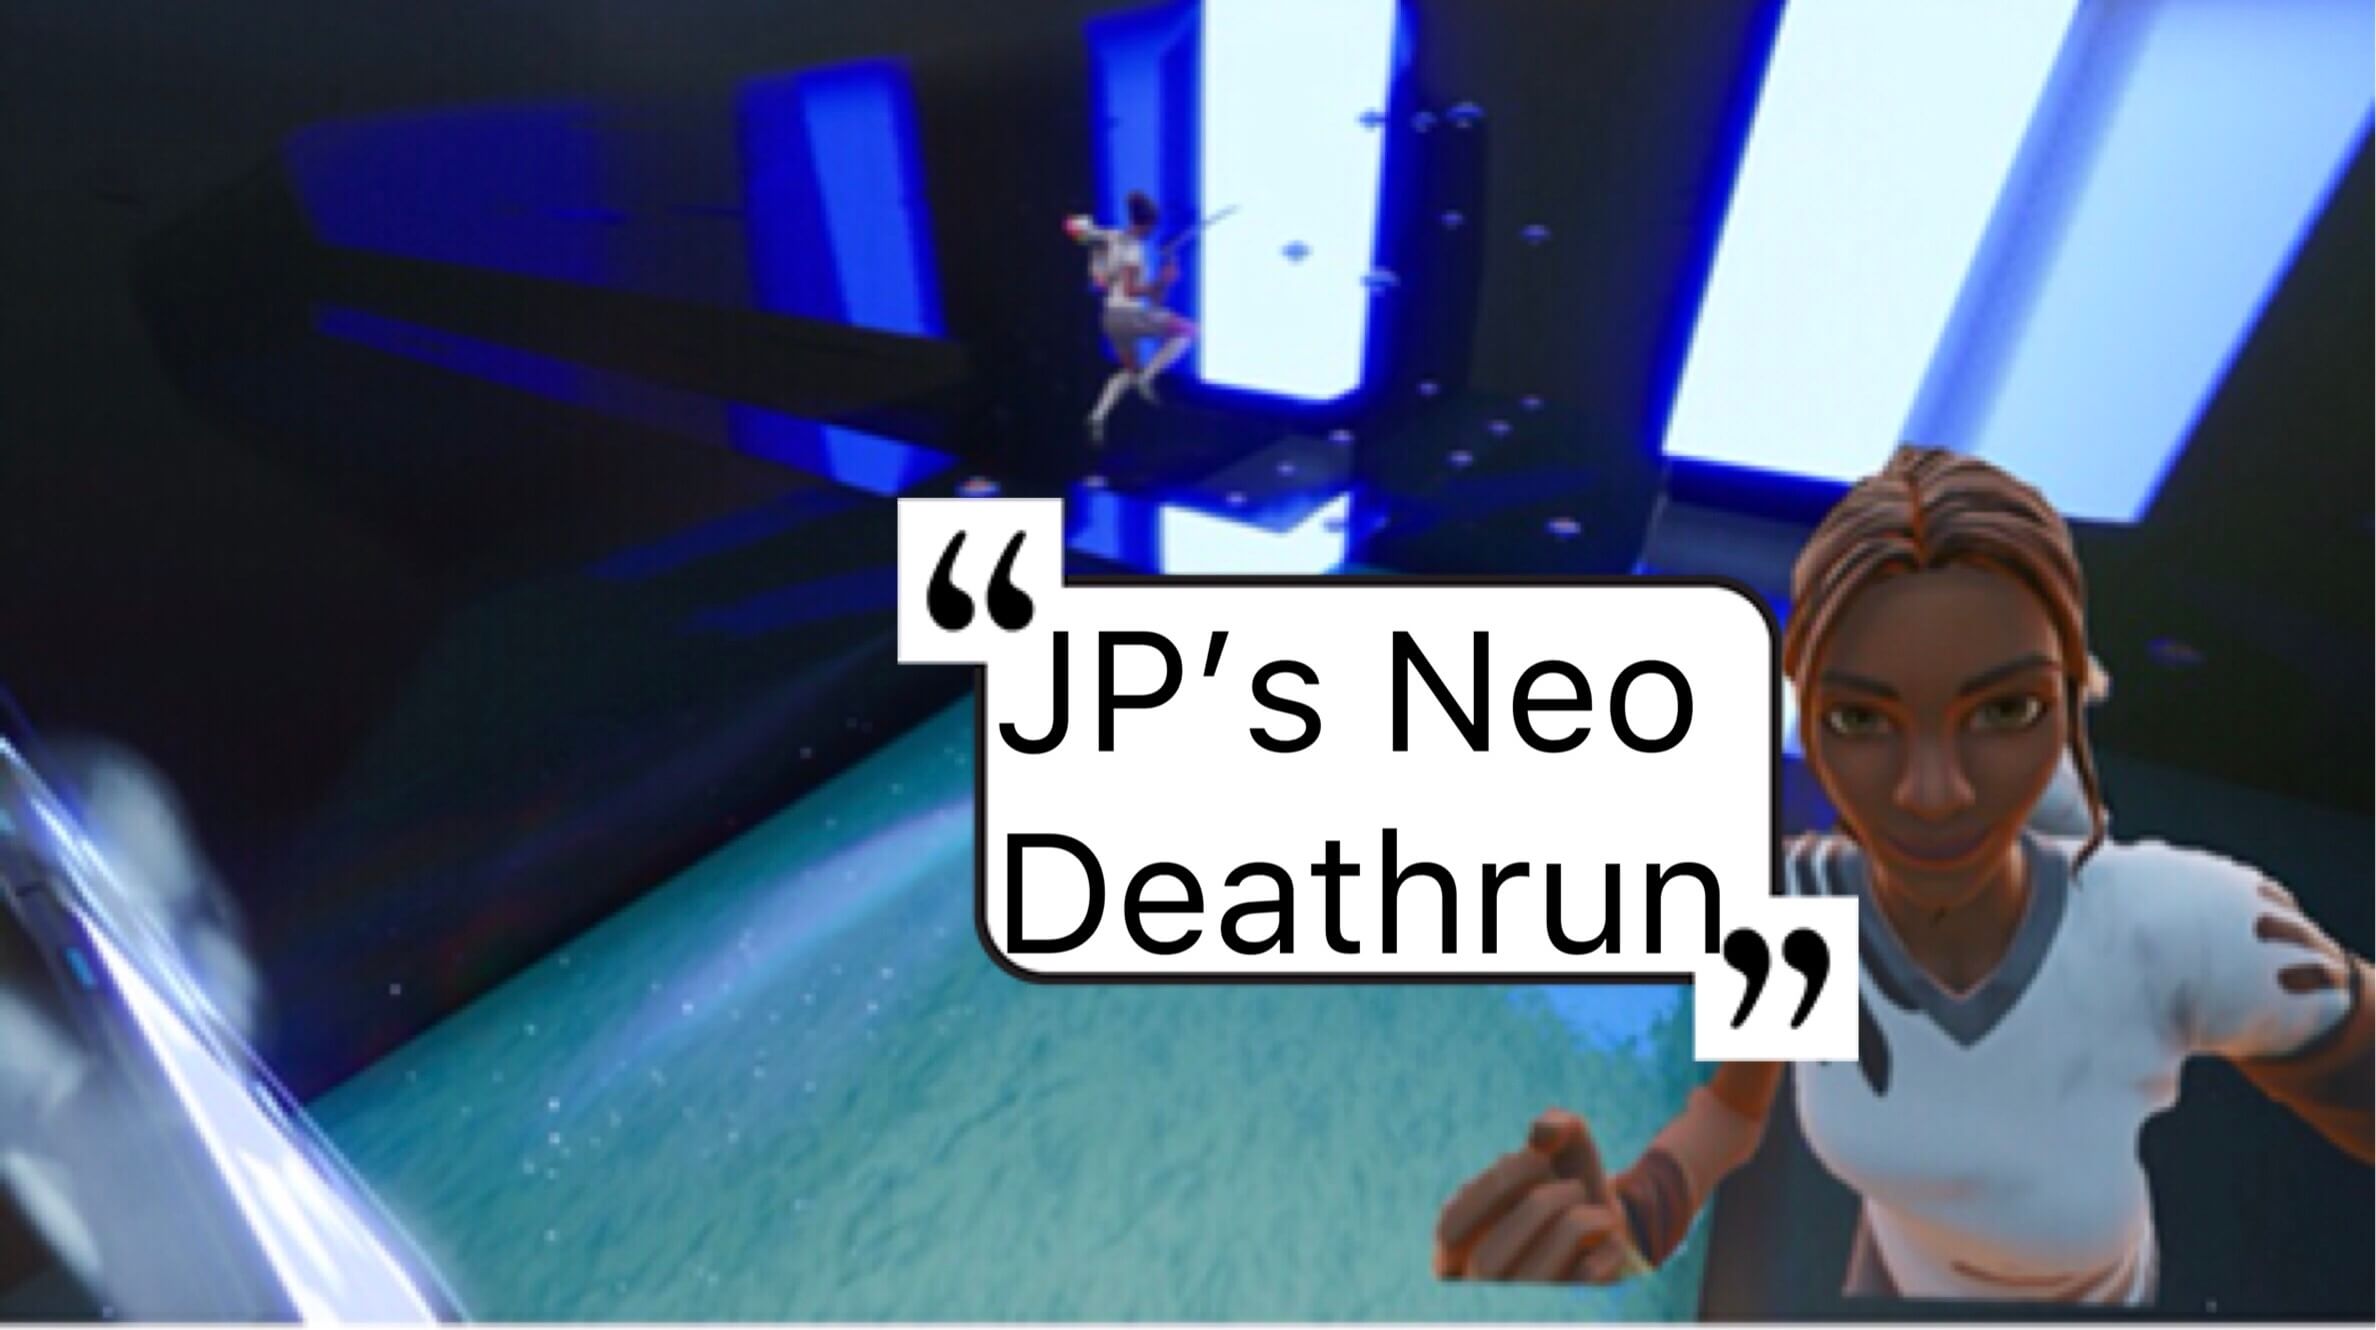 JP'S NEO DEATHRUN